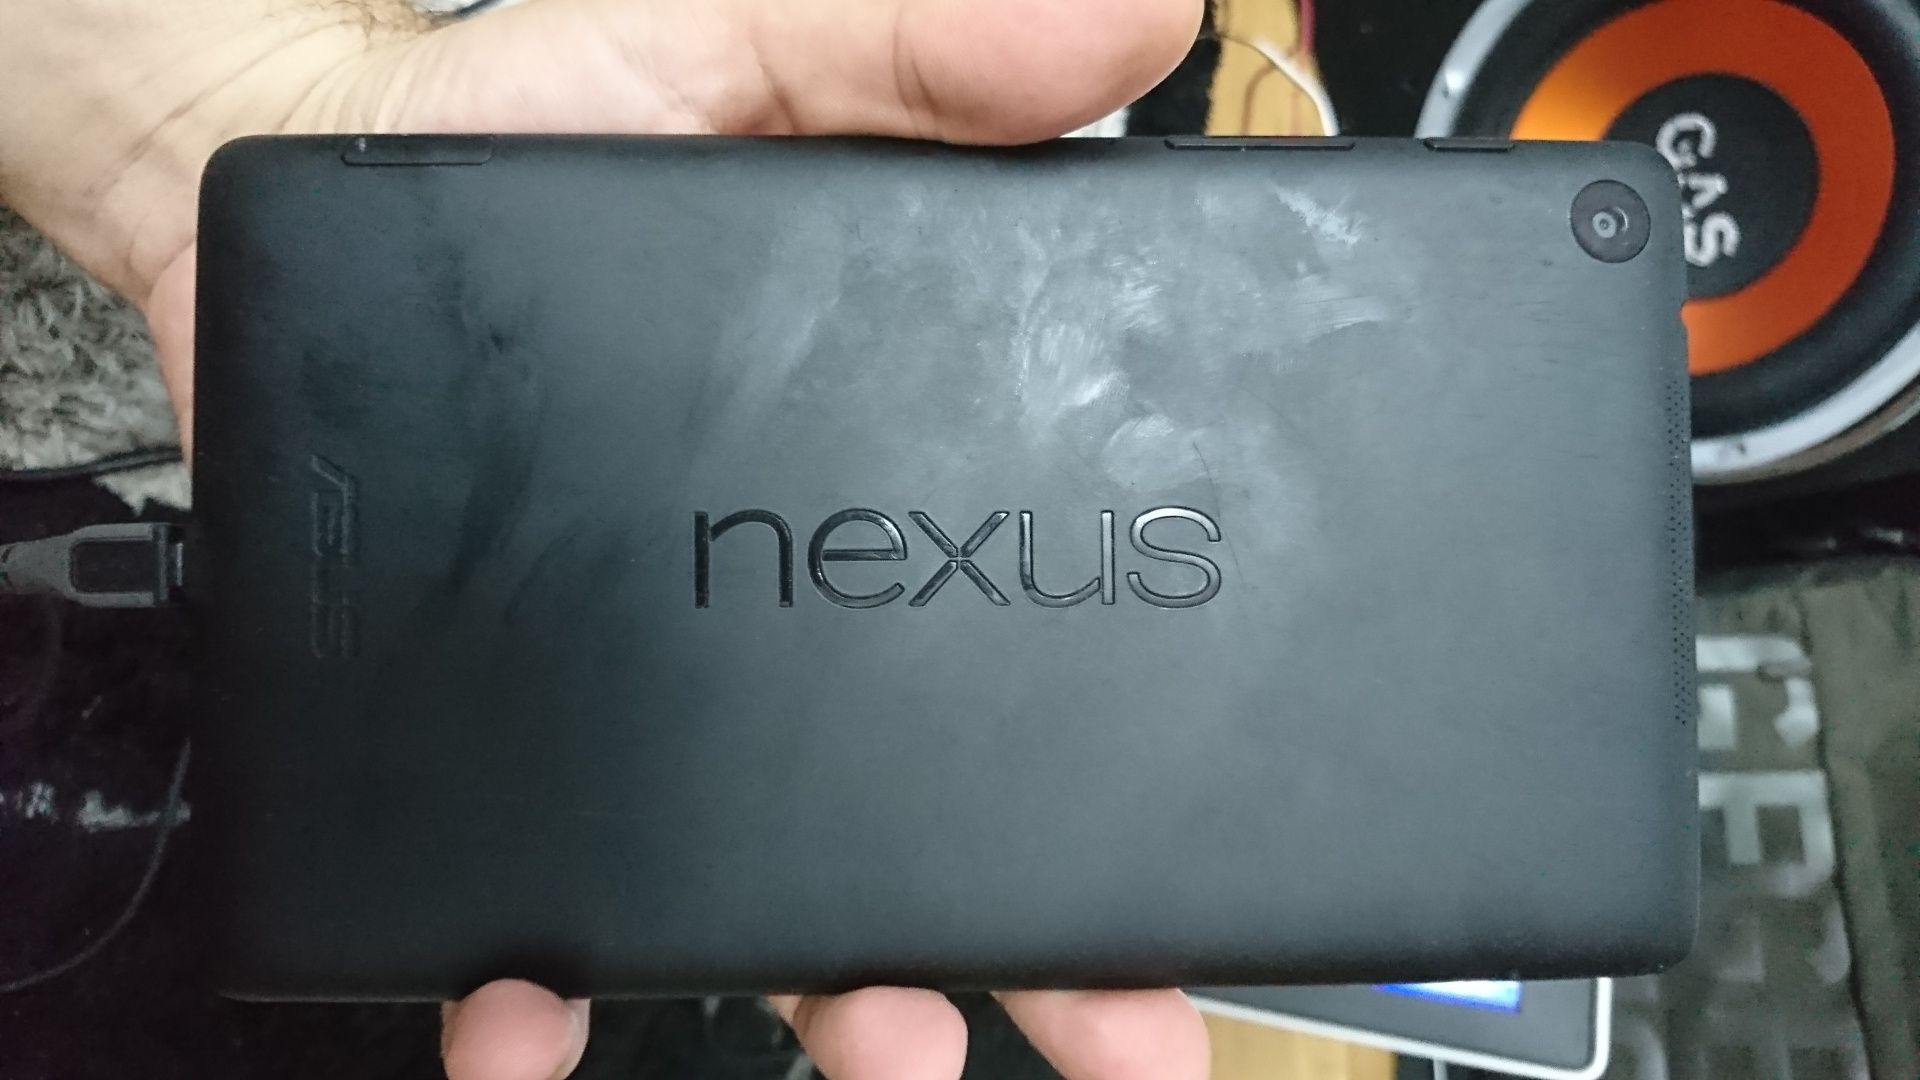 Tableta Nexus 7 - 2013 - wi-fi 3g pentru piese. Placa de baza buna